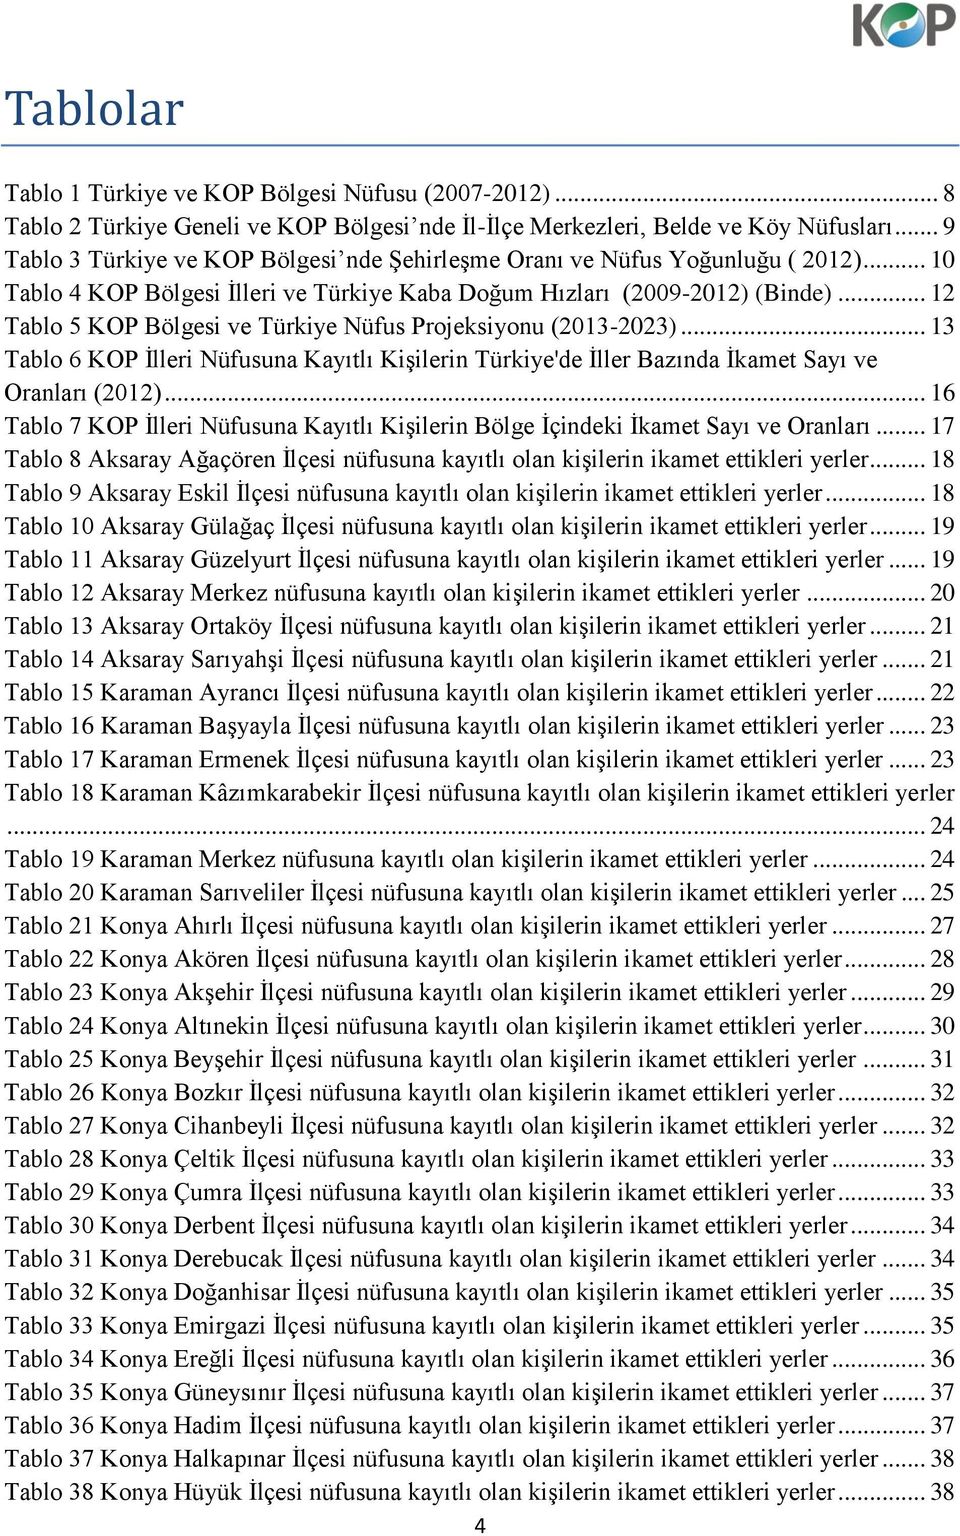 .. 12 Tablo 5 KOP Bölgesi ve Türkiye Nüfus Projeksiyonu (2013-2023)... 13 Tablo 6 KOP İlleri Nüfusuna Kayıtlı Kişilerin Türkiye'de İller Bazında İkamet Sayı ve Oranları (2012).